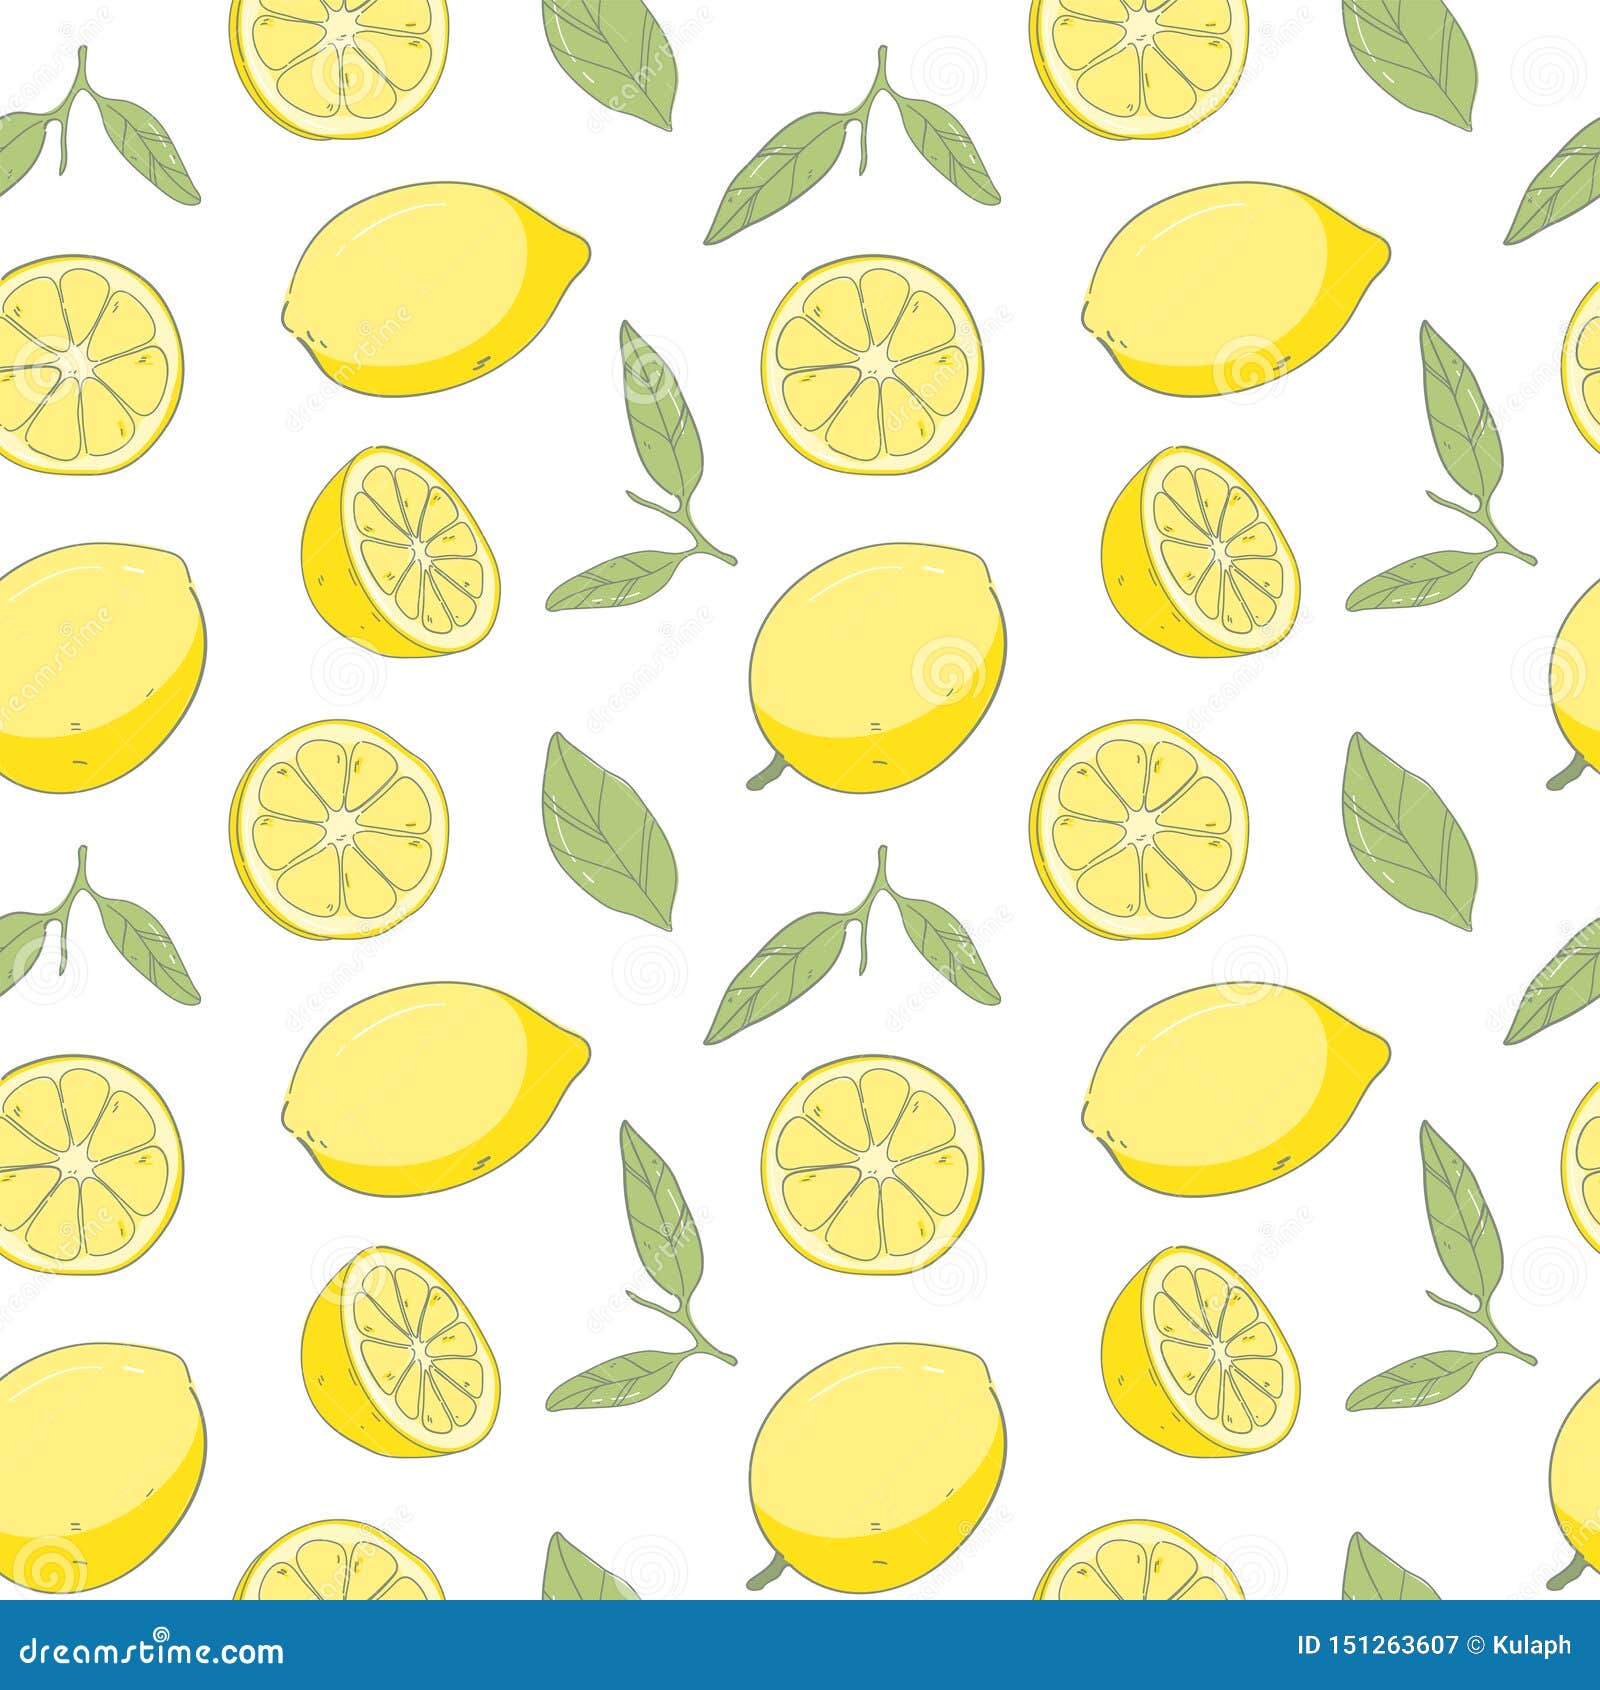 Hình nền lemon tươi: Hình nền này khác hẳn những bức hình nền thông thường bởi sự nổi bật của các quả chanh tươi. Hãy thưởng thức bức hình nền này và cảm nhận sự tươi mới và sức sống mà nó mang lại.